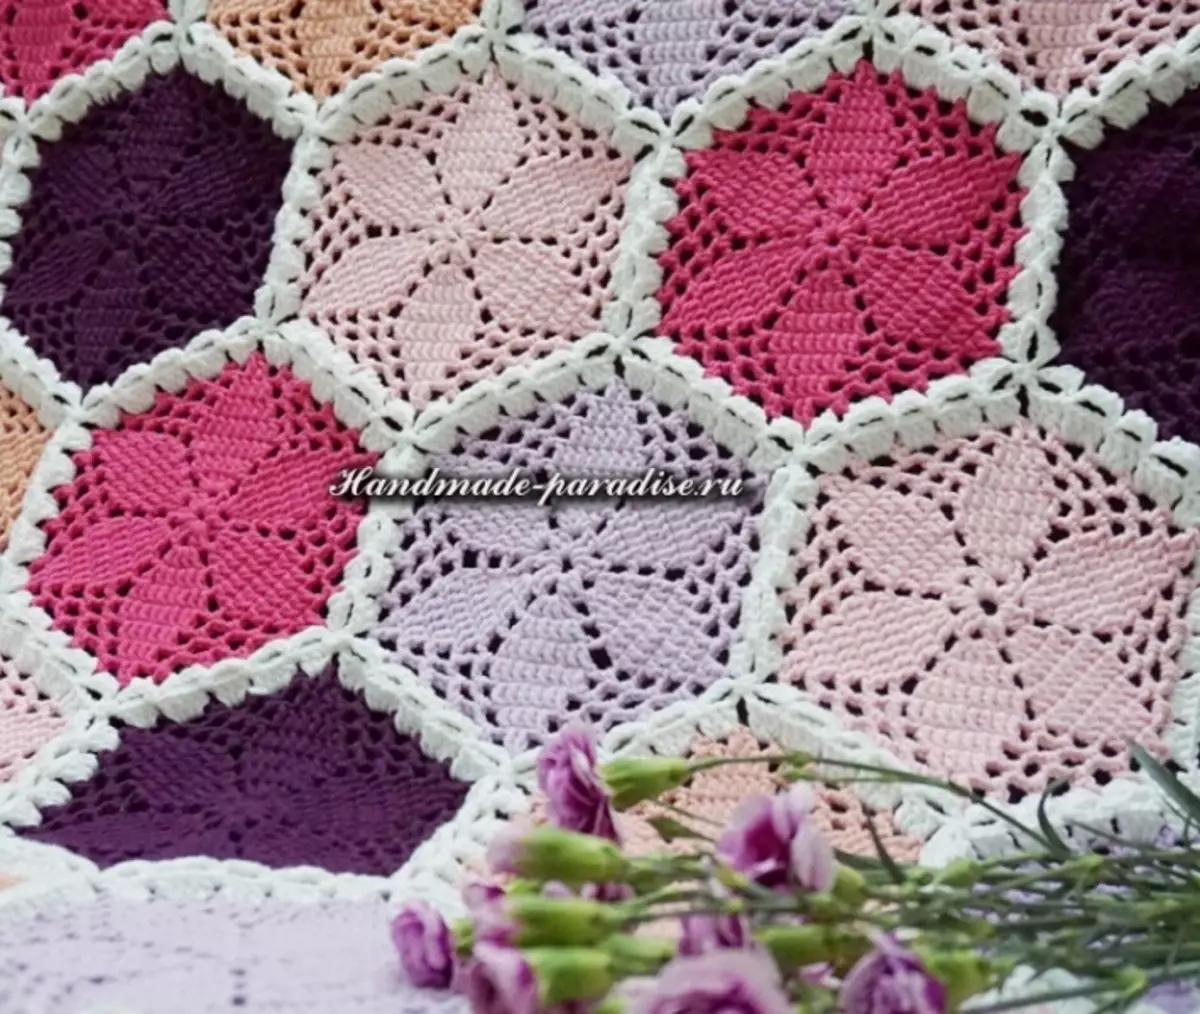 Sakop ng hexagonal crochet motifs.